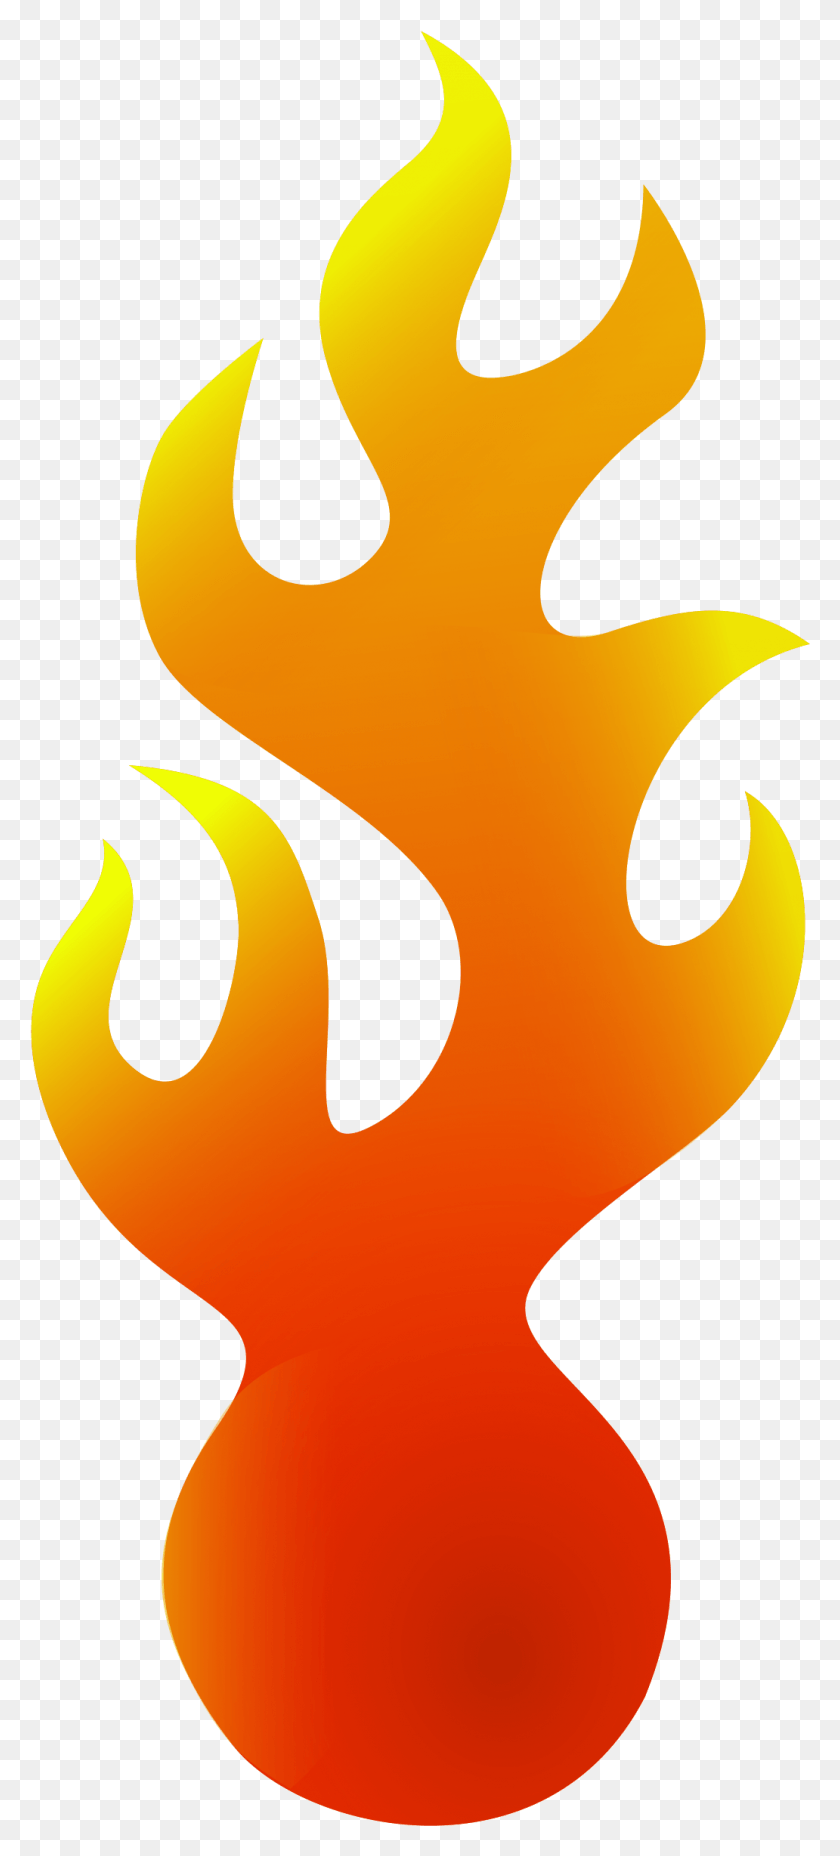 1032x2377 Descargar Png Fuego Clip Art Frontera De Una Bola En Fuego, Texto, Llama, Símbolo Hd Png